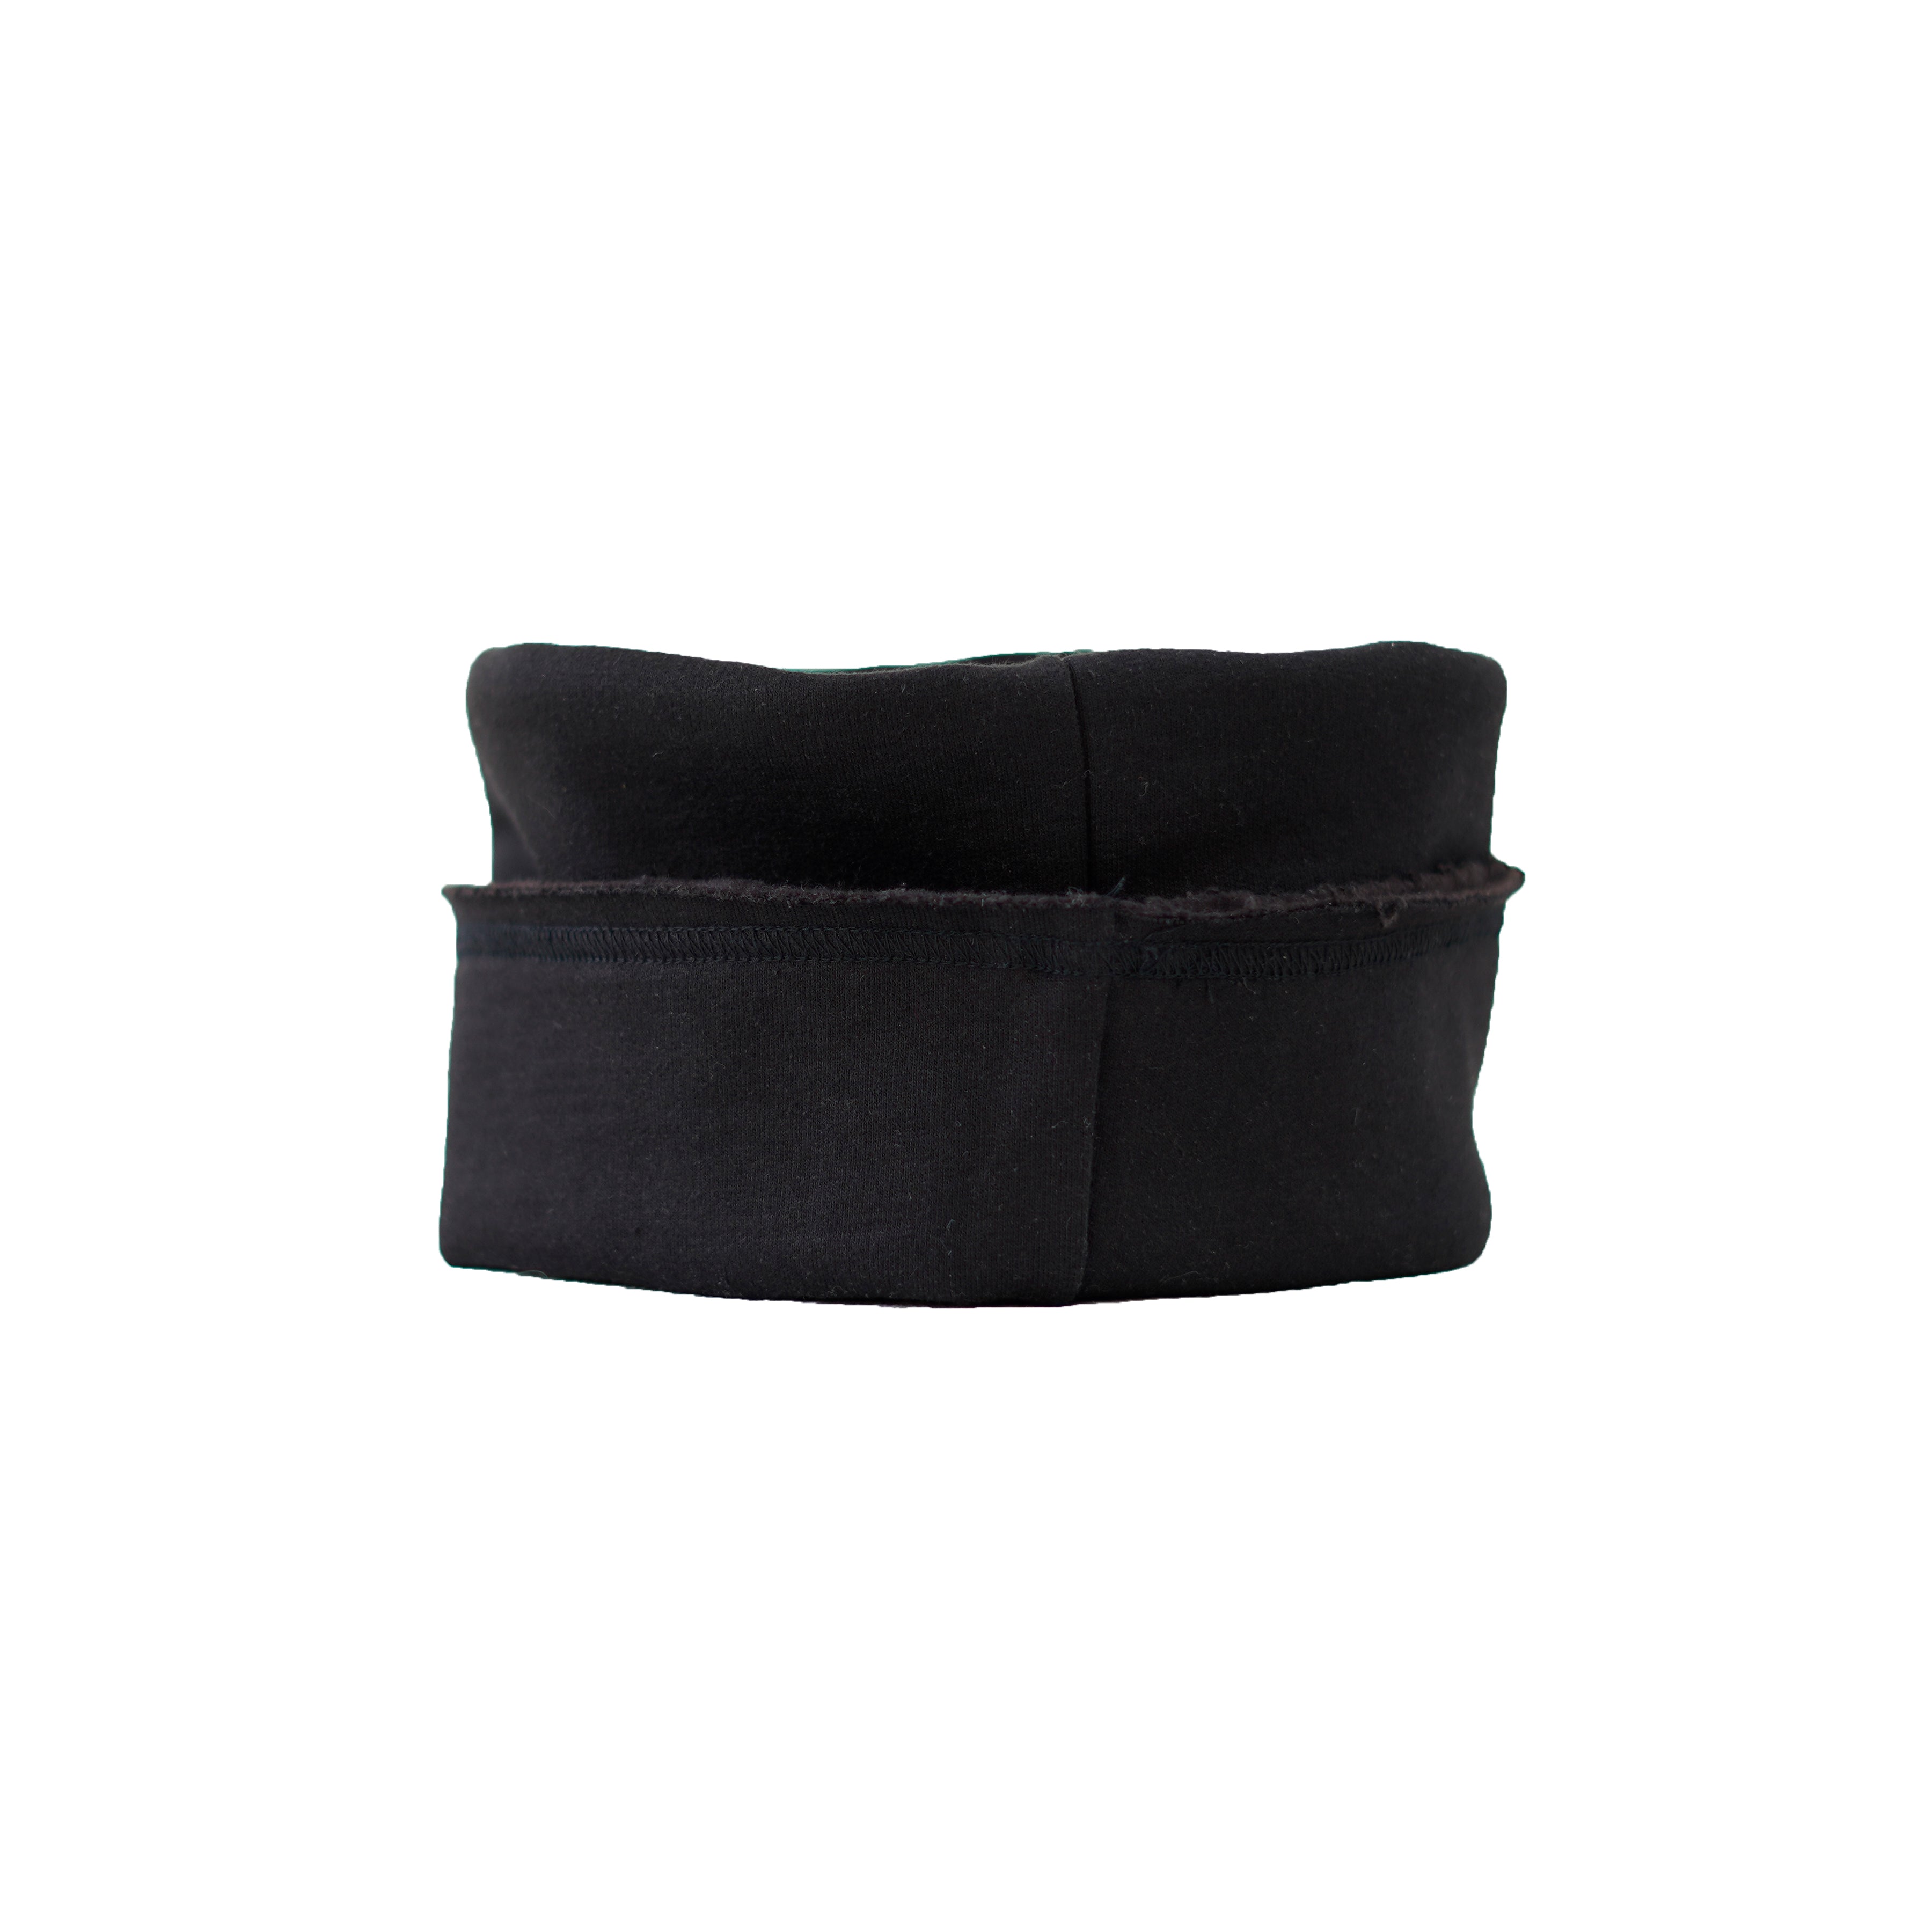 black, flat top, cuffed winter cap